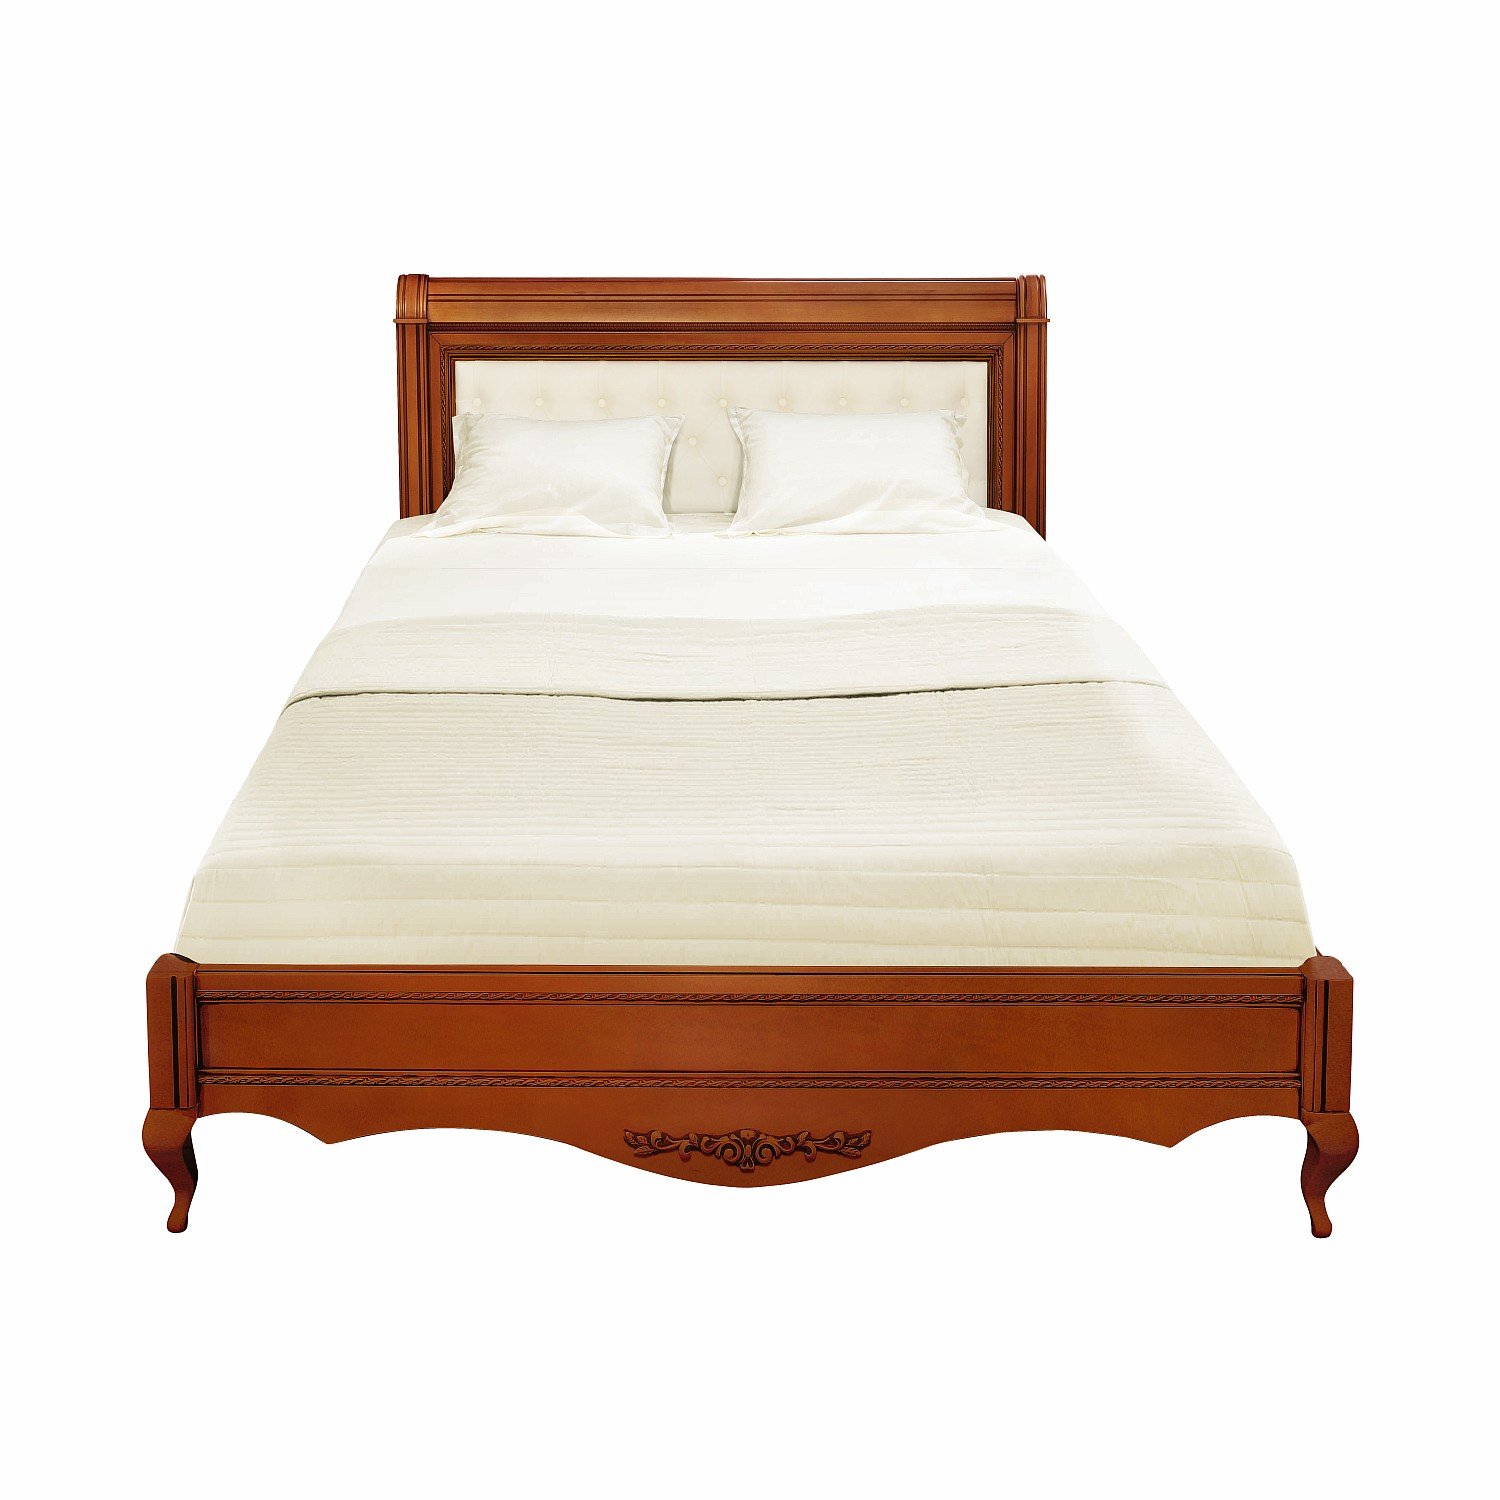 Кровать Timber Неаполь, двуспальная с мягким изголовьем 160x200 см цвет: янтарь (T-520)T-520